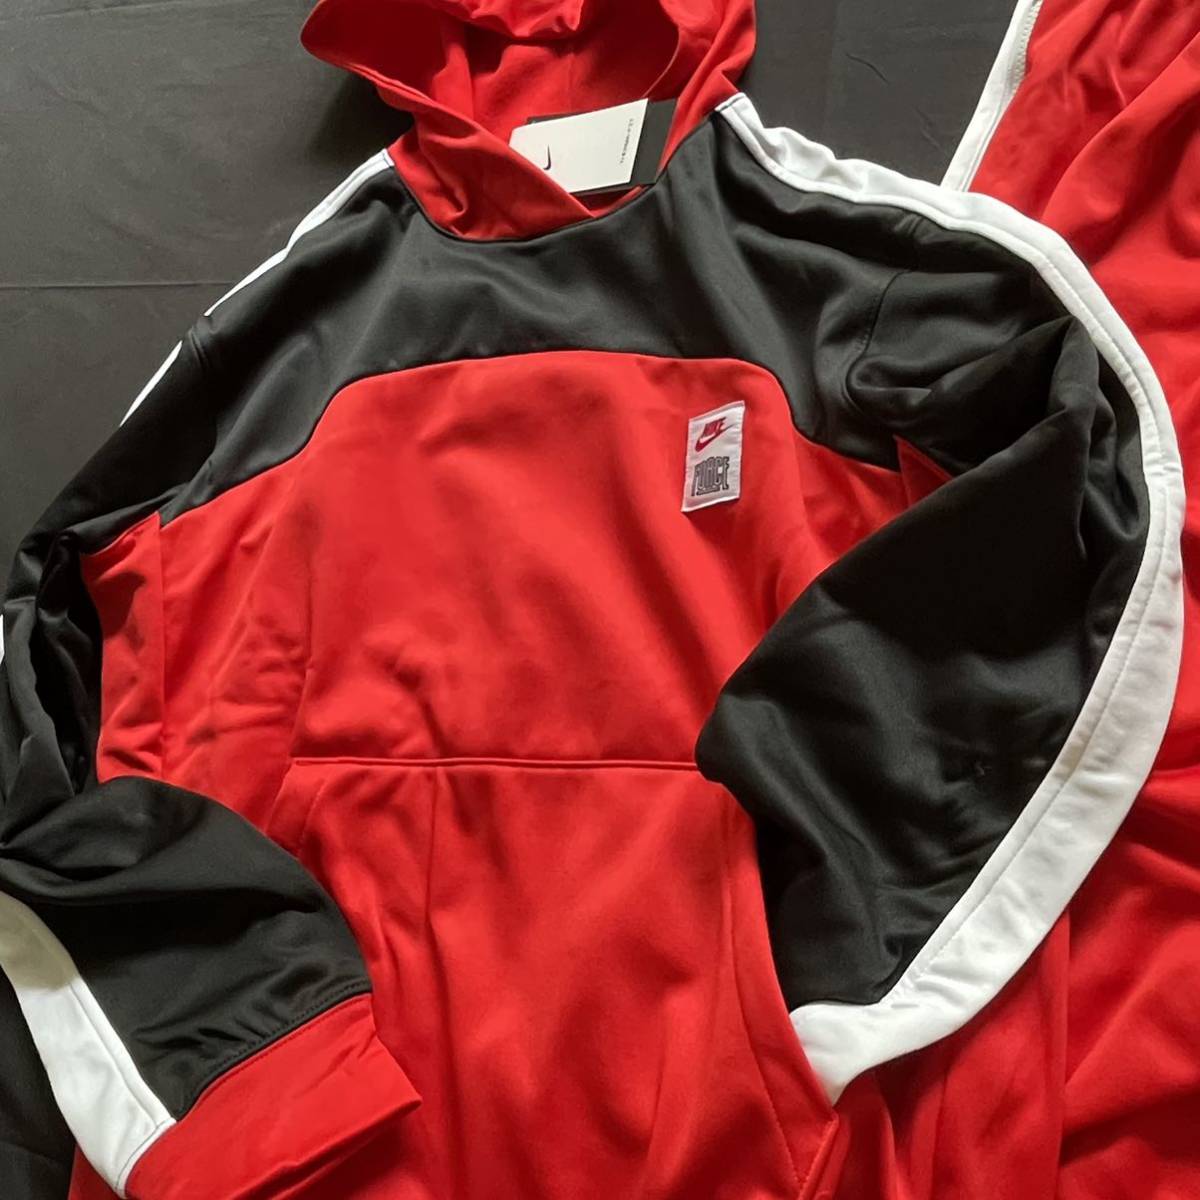 新品 NIKE 上下セットアップ Lsize プルオーバーパーカー パンツ 赤 黒 白 裏起毛 バスケ ウェア Nike Forceの40周年 バスケットボール_画像5